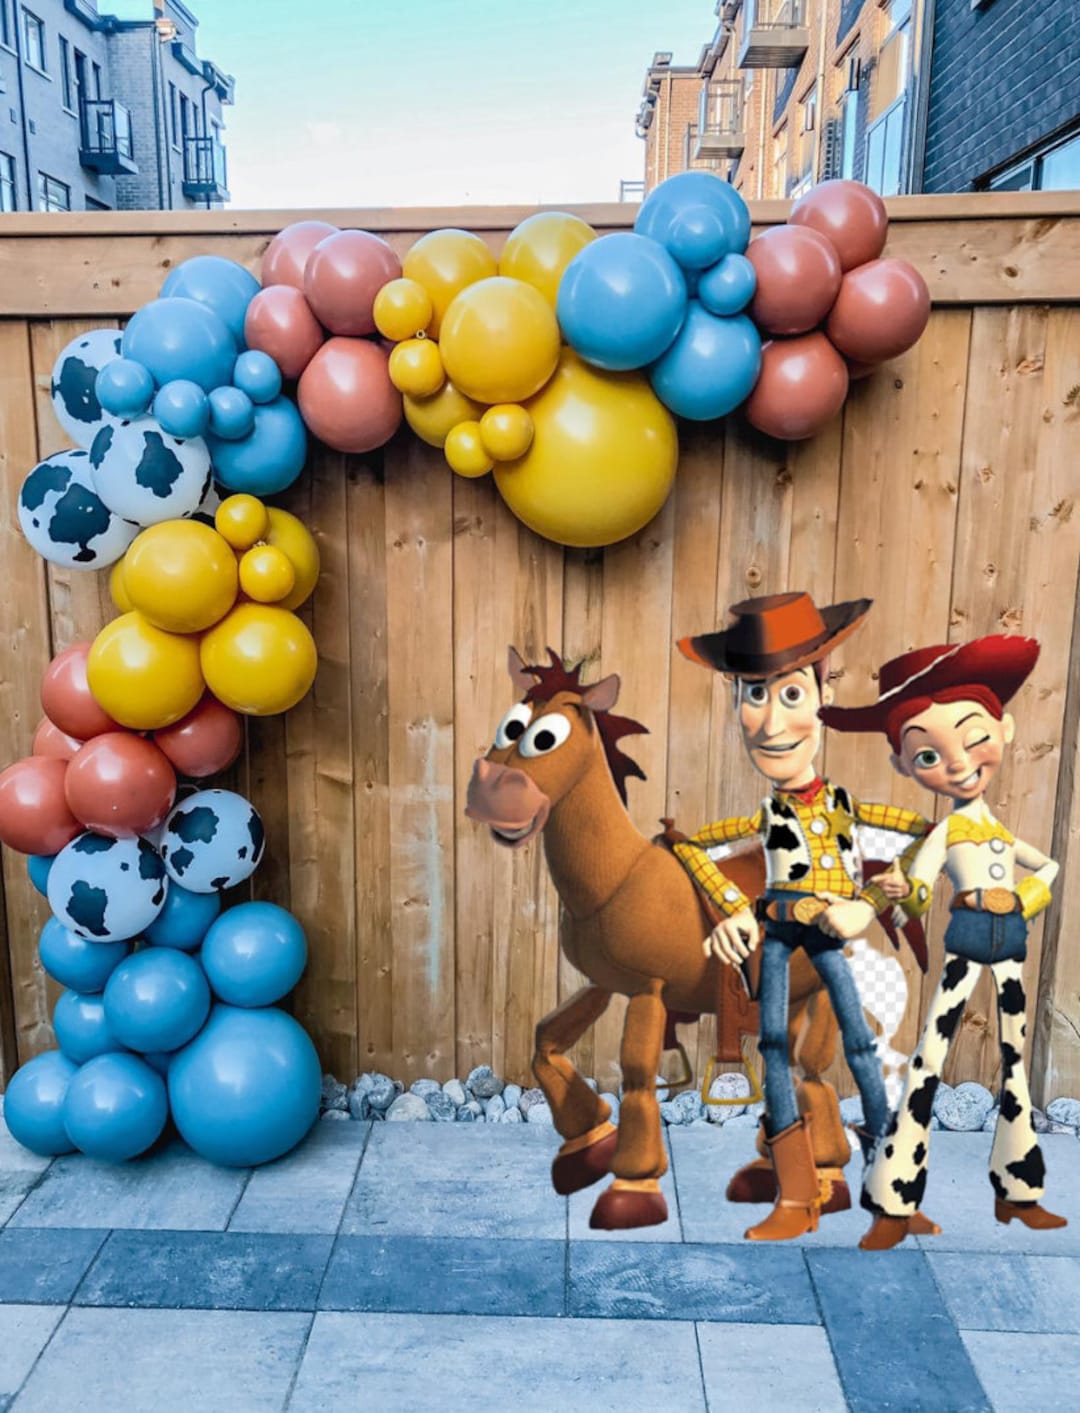 Décorations Anniversaire Toy Story Deco Anniversaire Toy Story Anniversaire  Décorations Toy Story Ballons Toy Story Anniversaire Ballon Toy Story  Décorations de Gâteau Toy Story Banderole Anniversaire : : Cuisine  et Maison